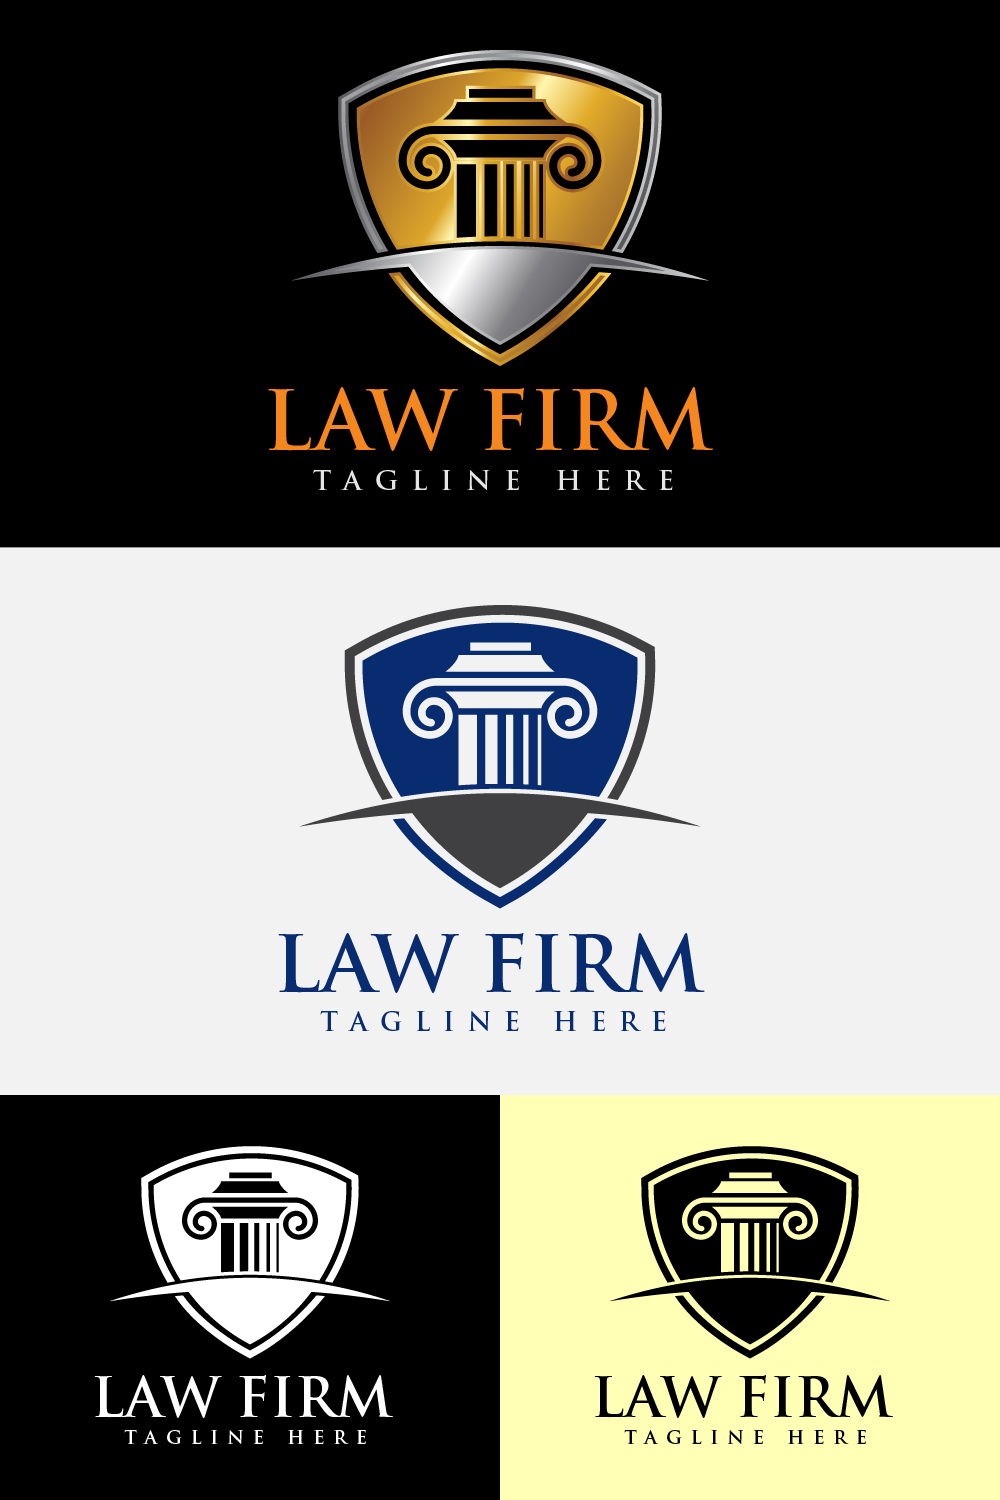 Law Firm Logo Design Illustration Concept pinterest image.